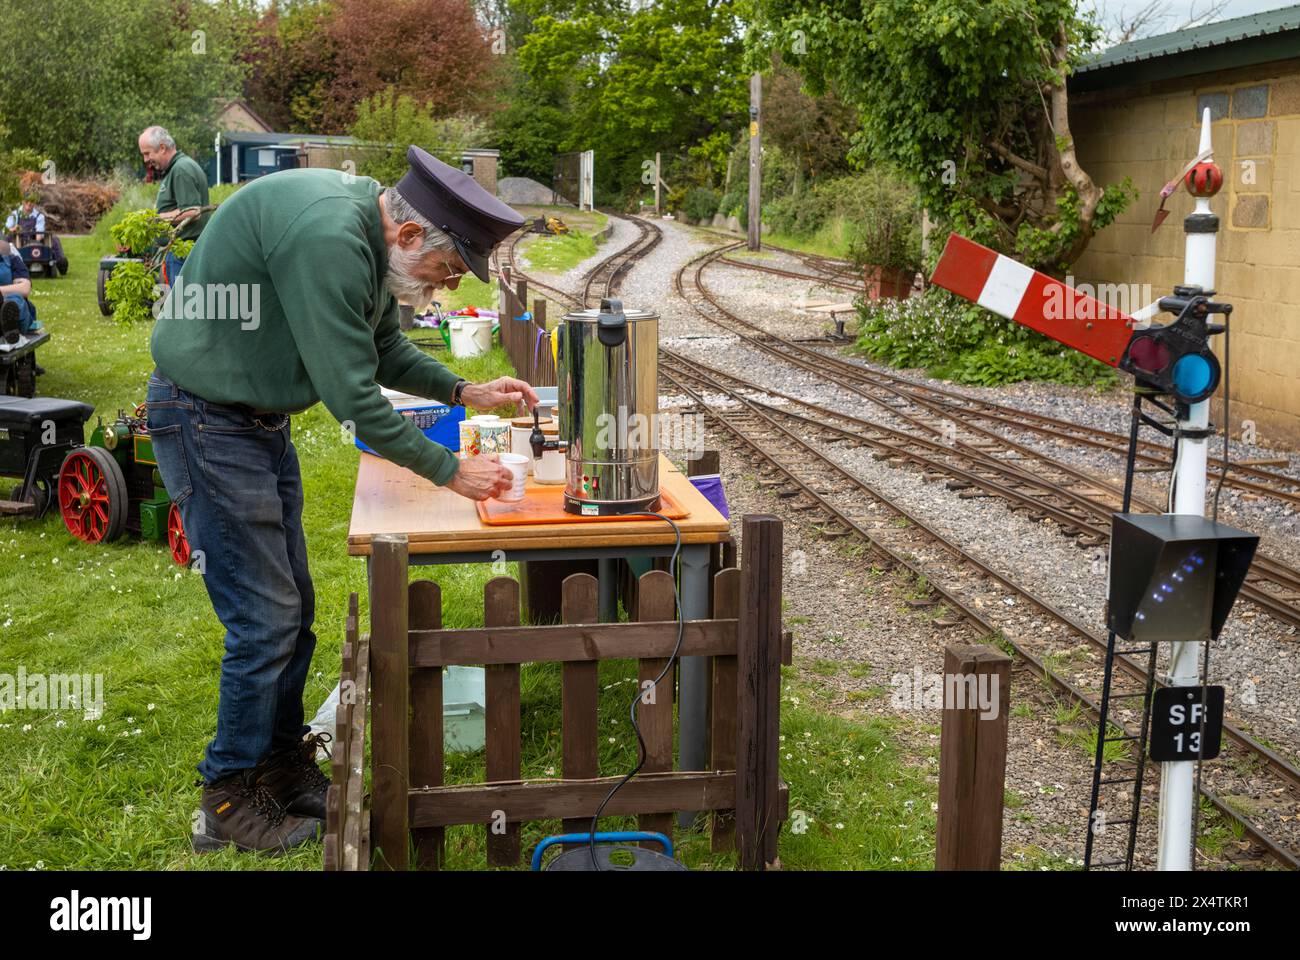 Un bénévole prépare une tasse de thé dans une urne d'eau chaude au South Downs Light Railway, Pulborough, Royaume-Uni Banque D'Images